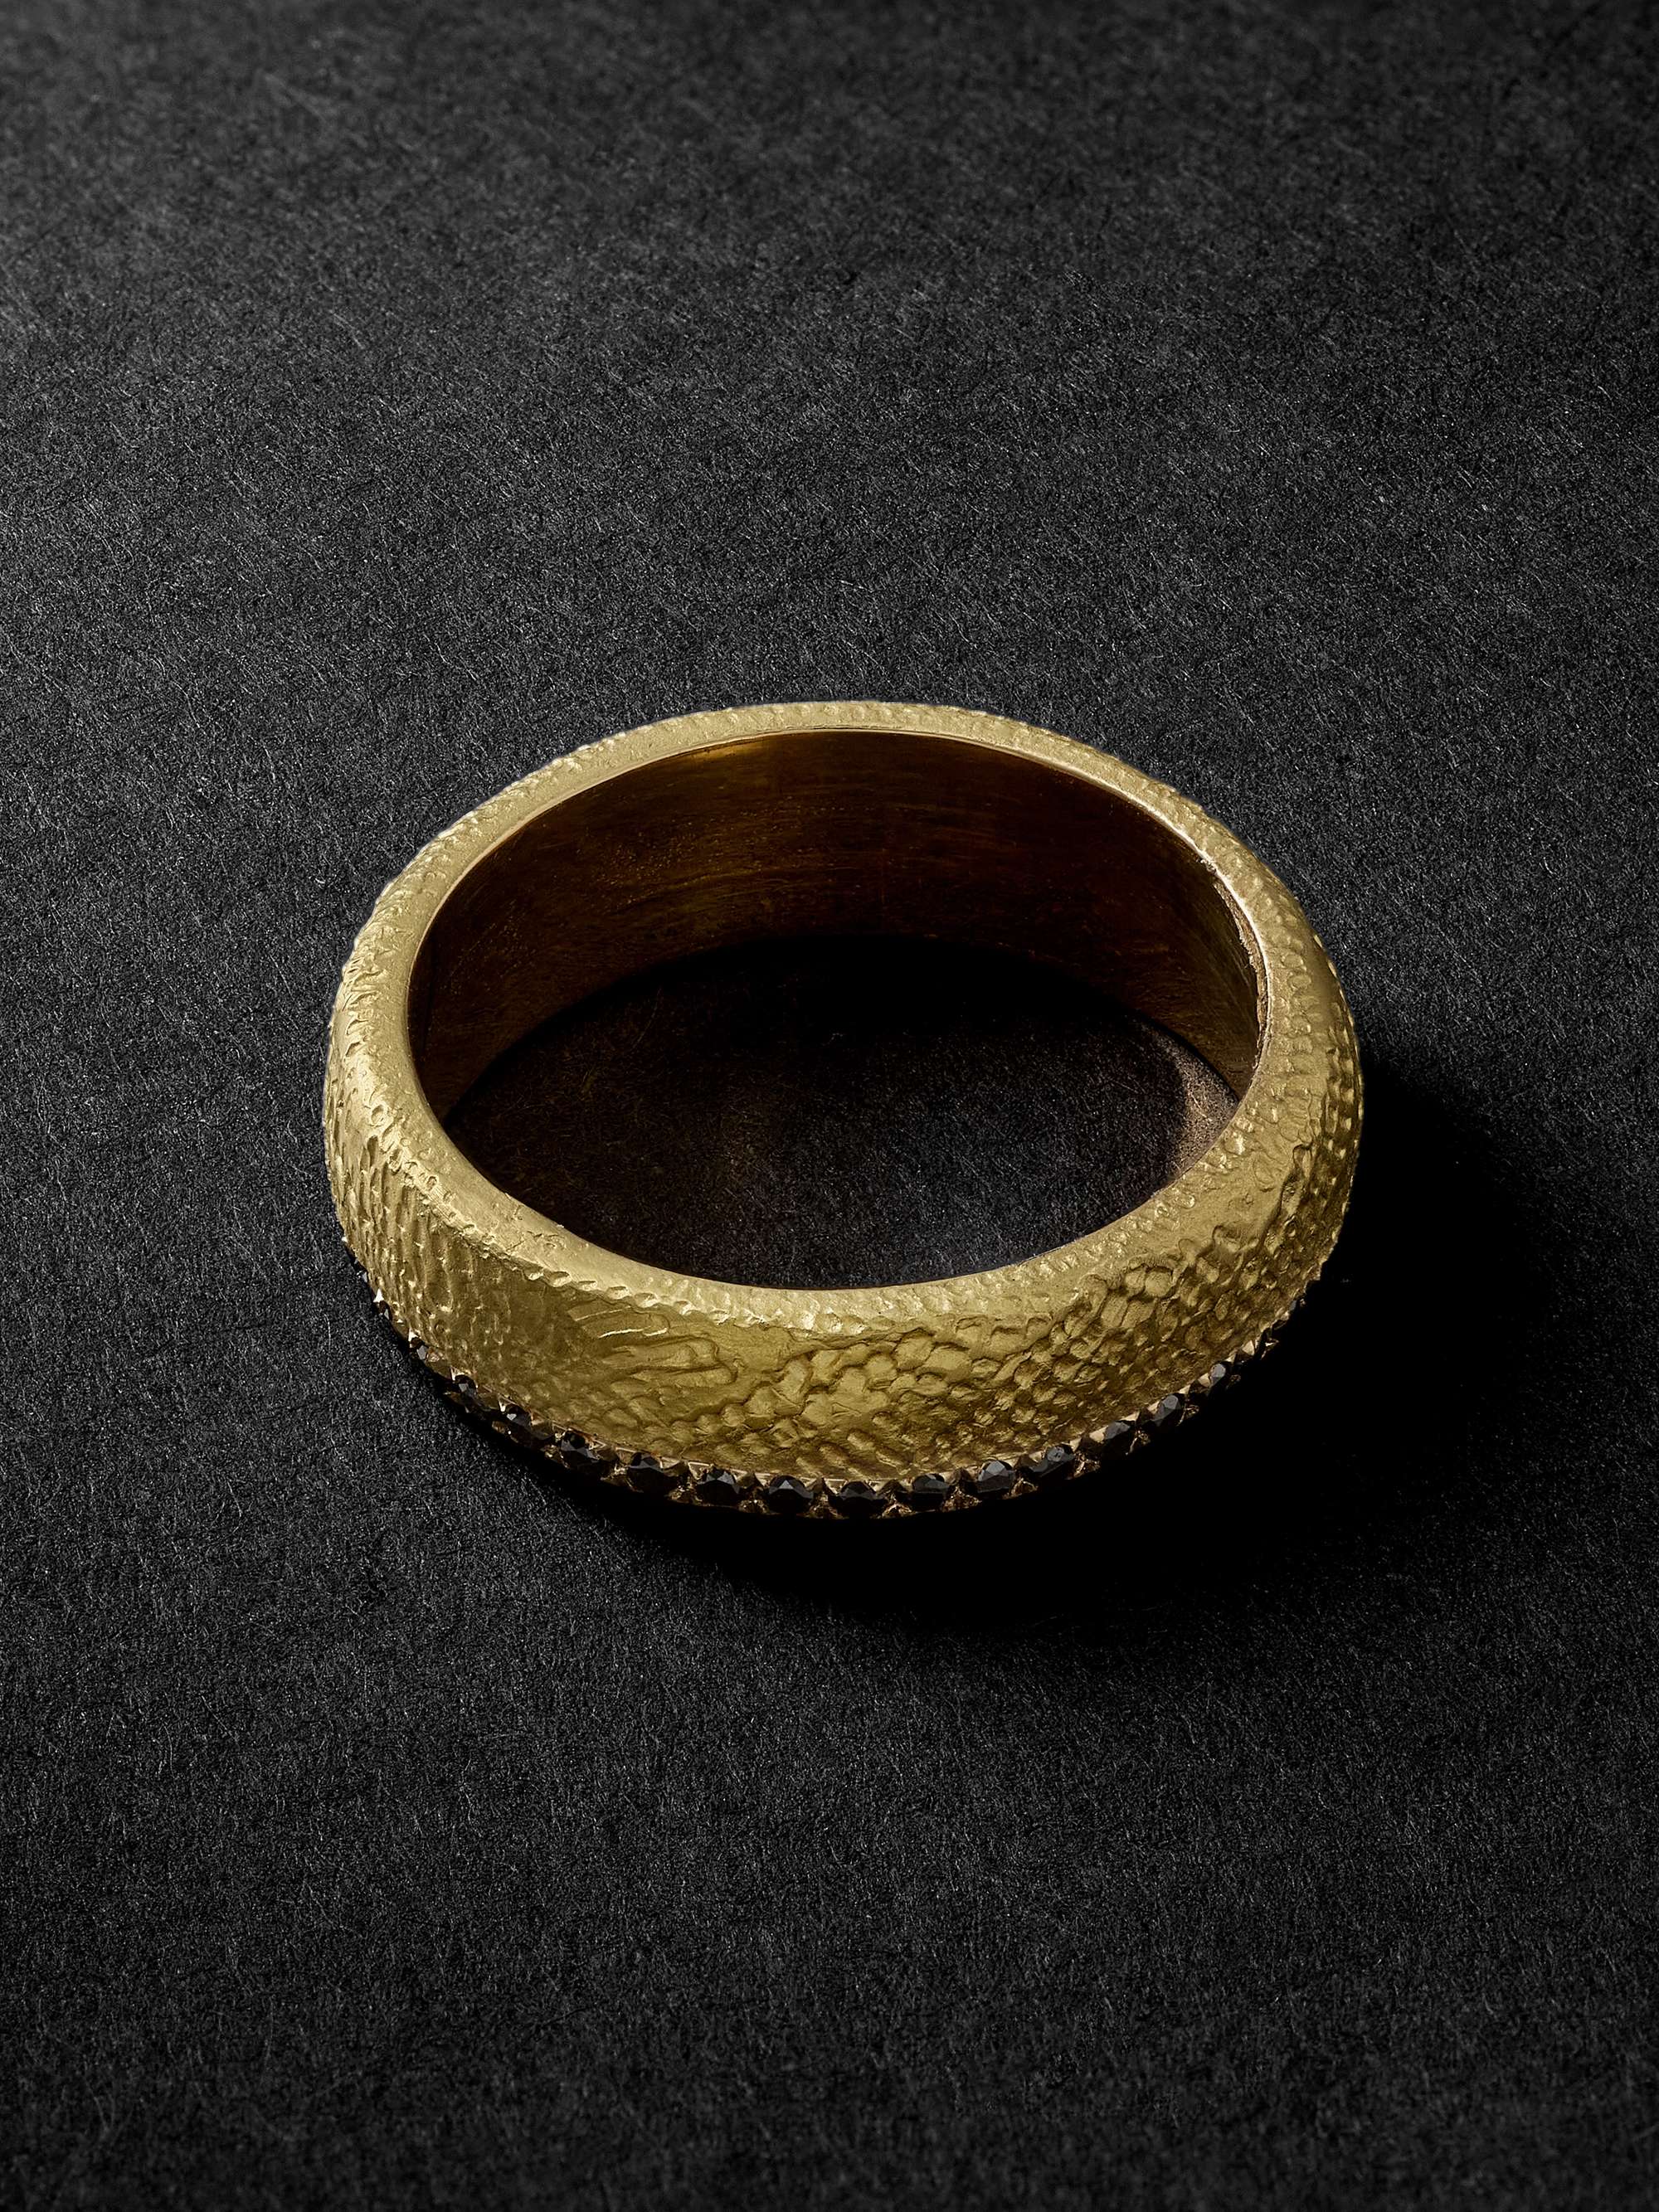 ELHANATI Mezuzah Hammered Gold Diamond Ring